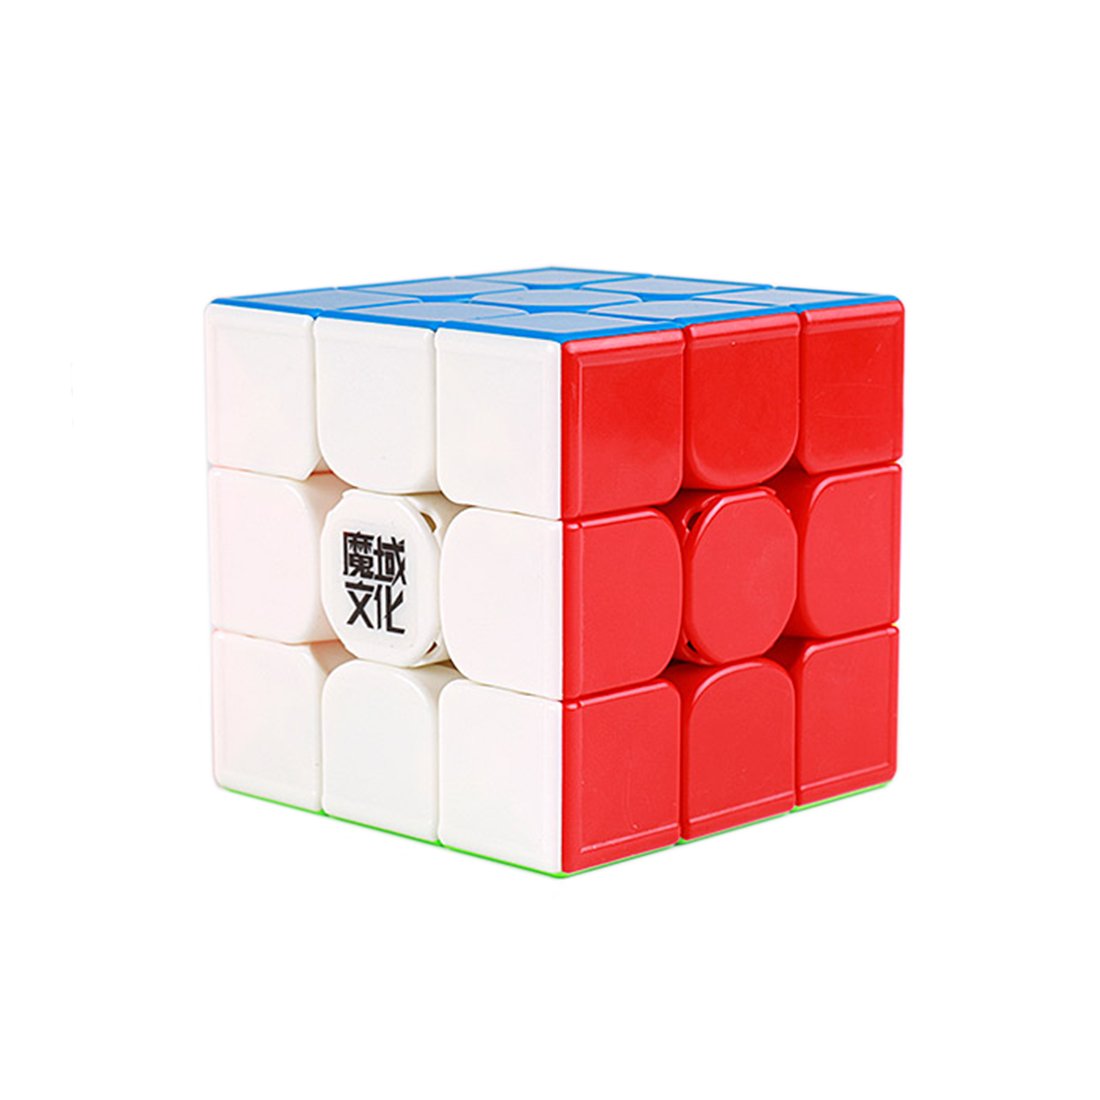 Blocs de construction magnétiques moyu cube magnétique le plus récent 3x3x3  - SENEGAL ELECTROMENAGER